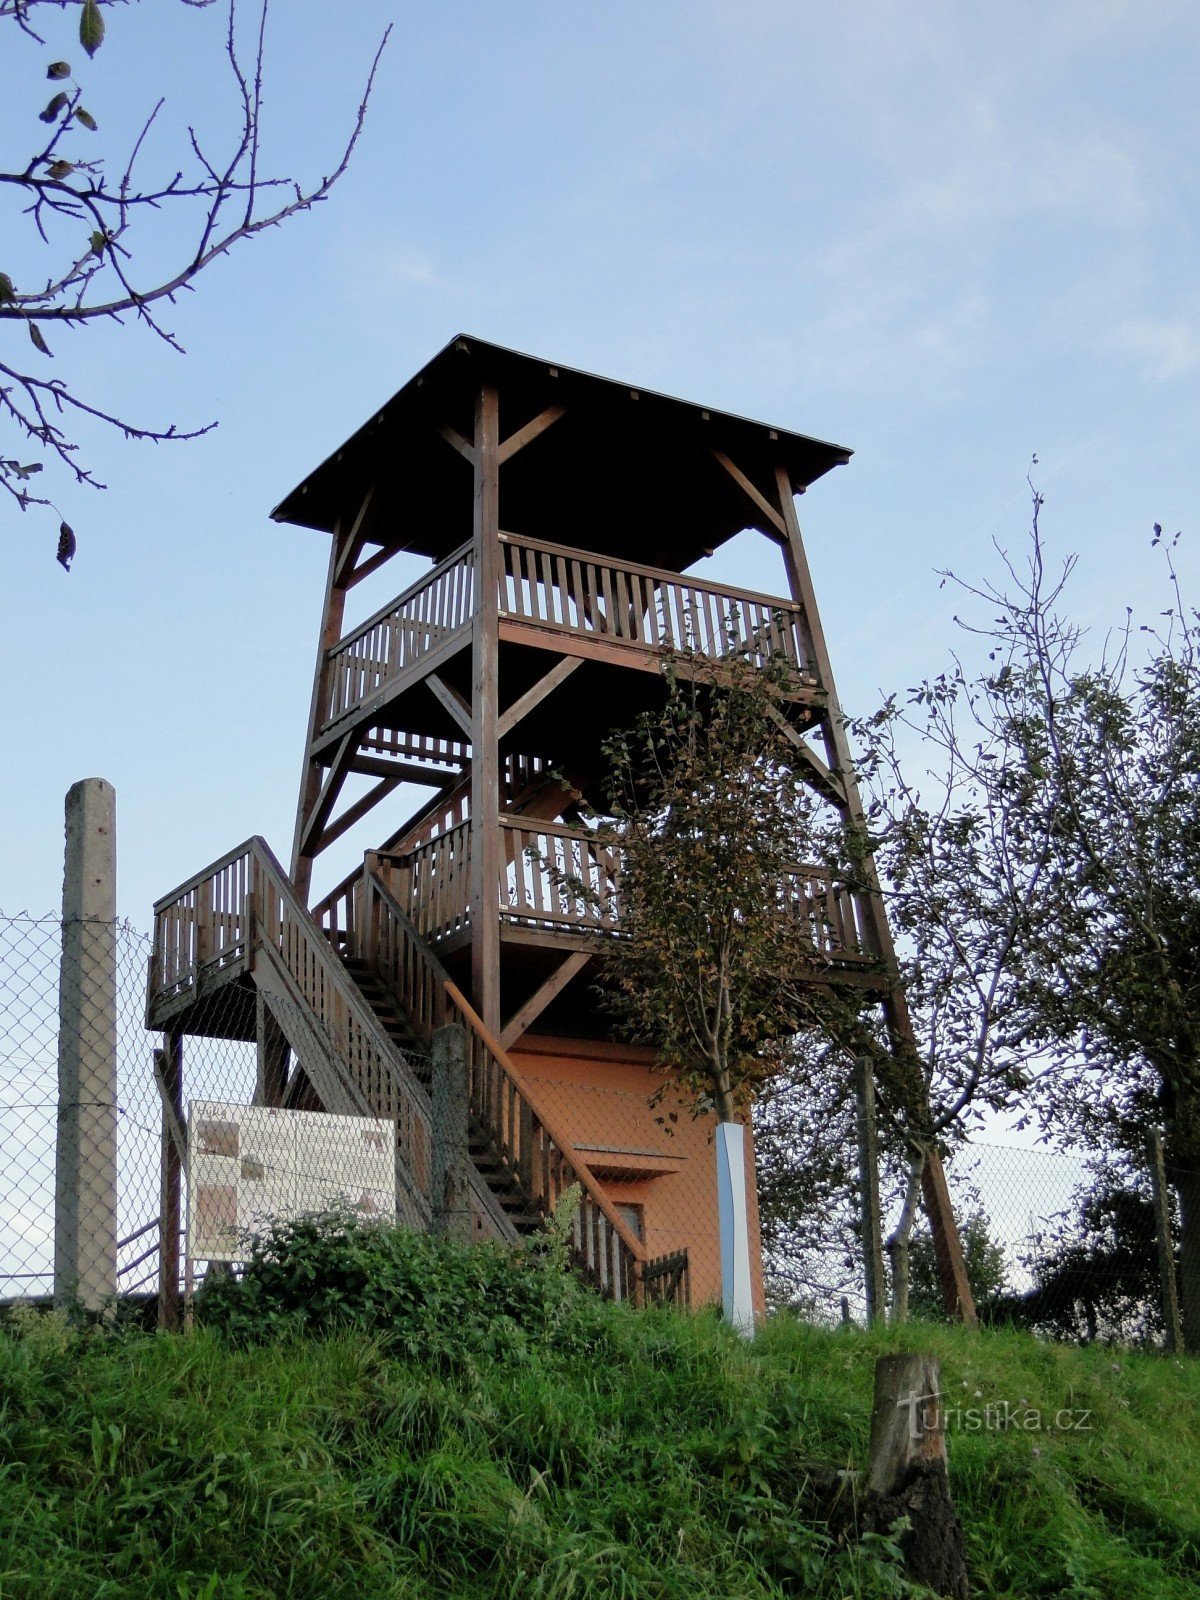 Johanka udsigtstårn i landsbyen Hýsly